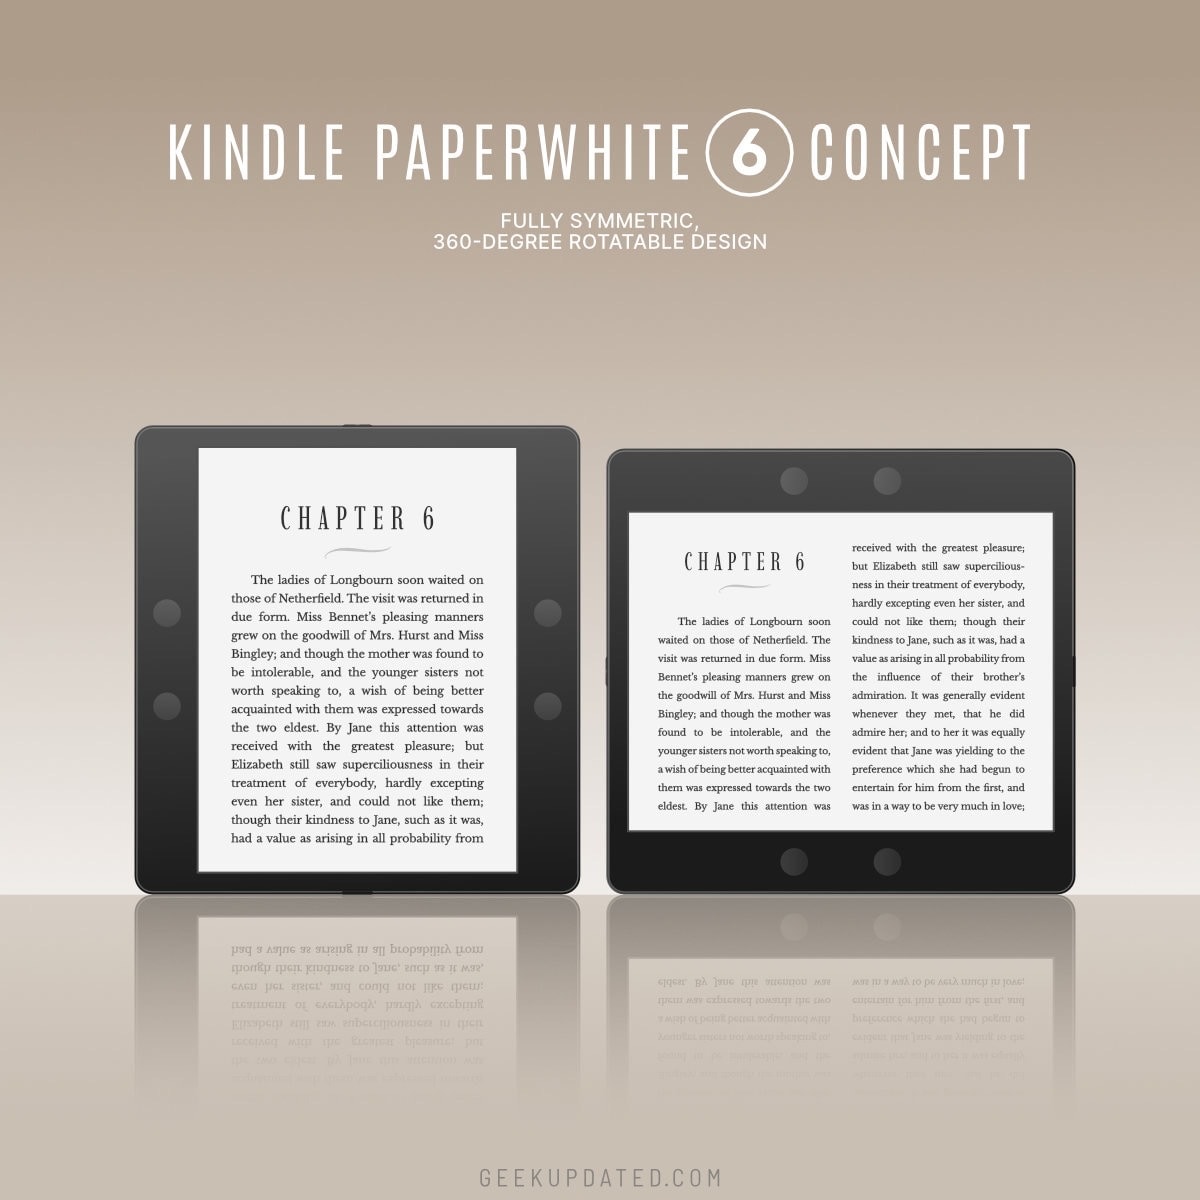 Next-generation Kindle Paperwhite concept - symmetric design